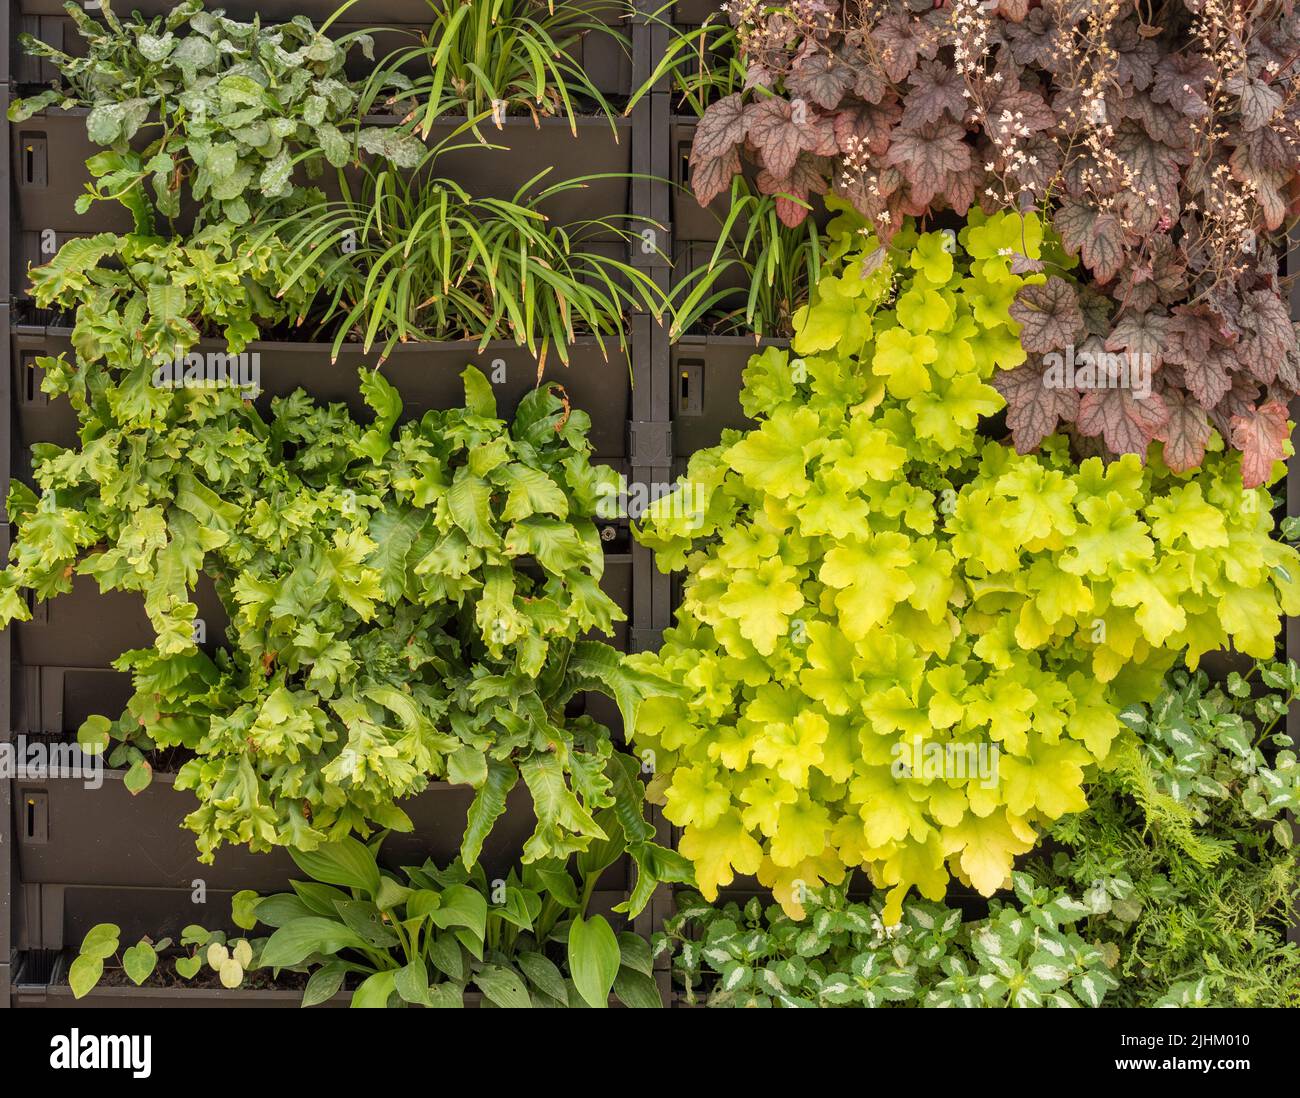 Vertikale Gartenarbeit. An einer Außenwand befestigte Kunststofftröge, die mit Farnen und Heucheras bepflanzt sind, um eine lebendige grüne Wand zu bilden. Stockfoto